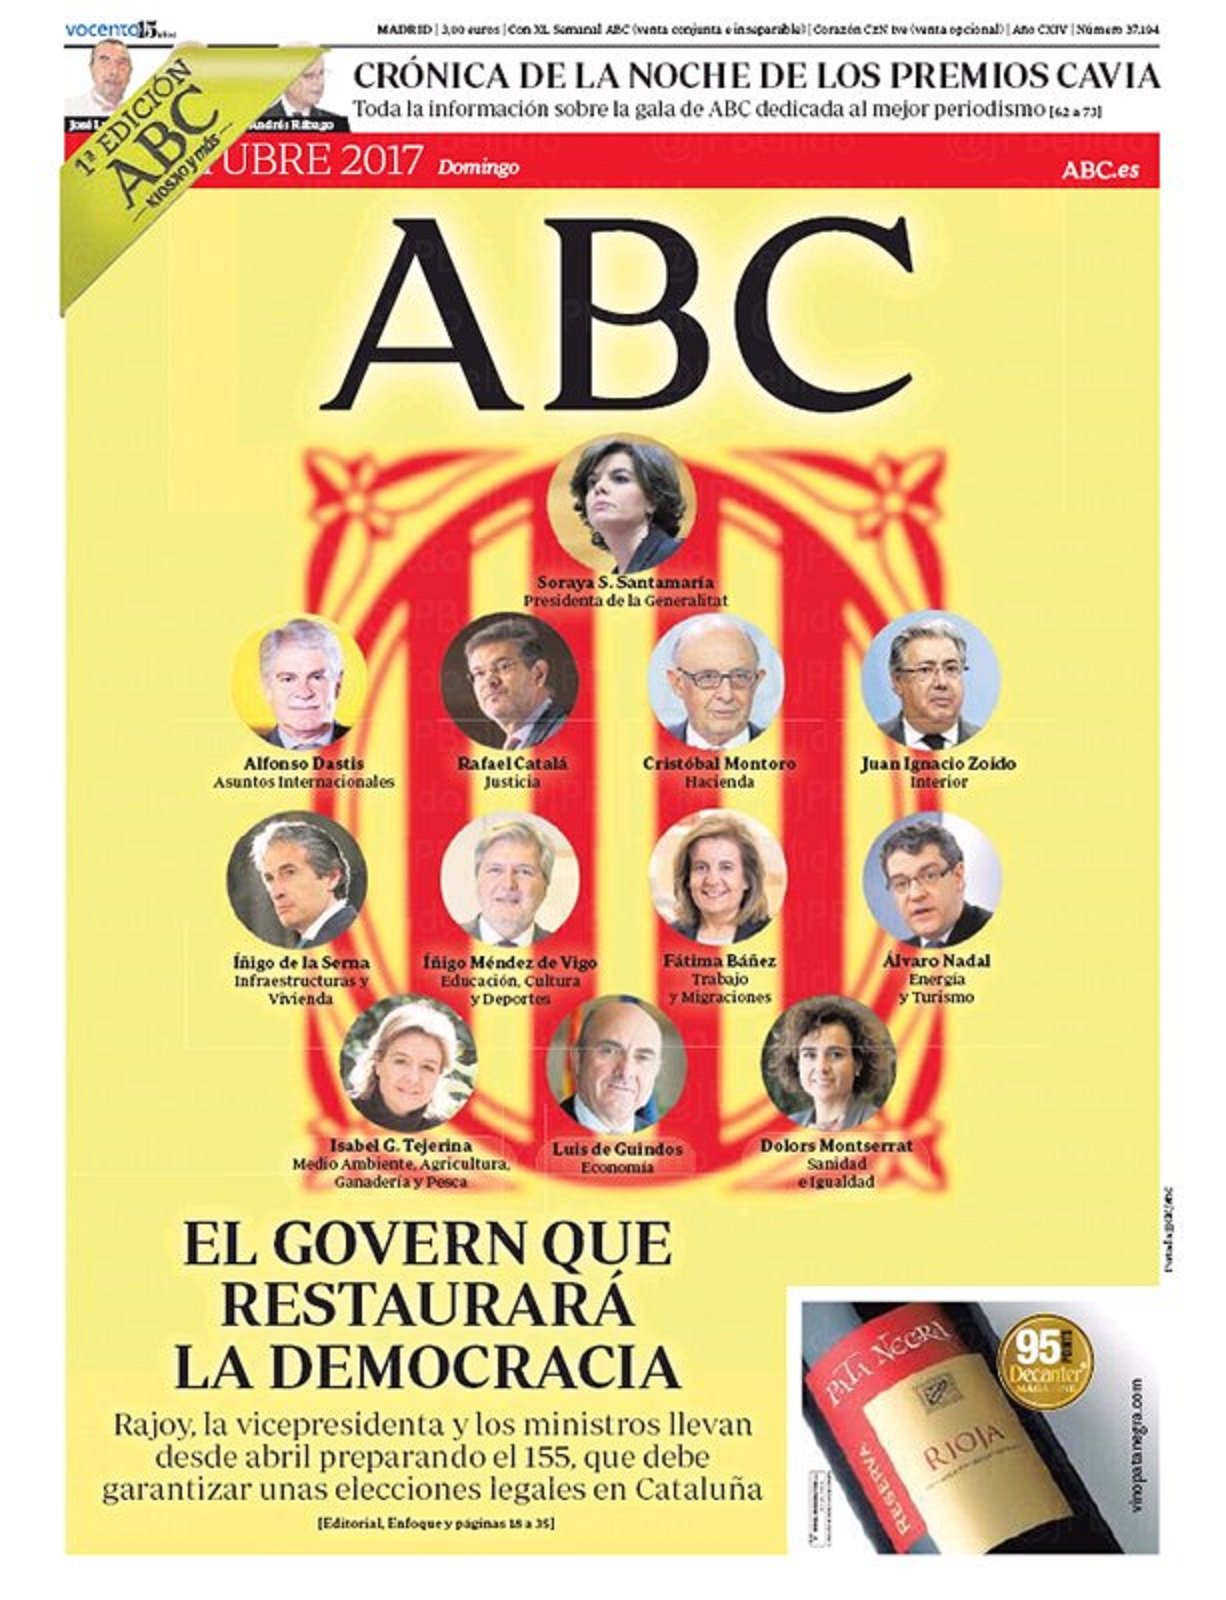 La exultante portada de 'ABC' que hace a Santamaría 'presidenta de la Generalitat'